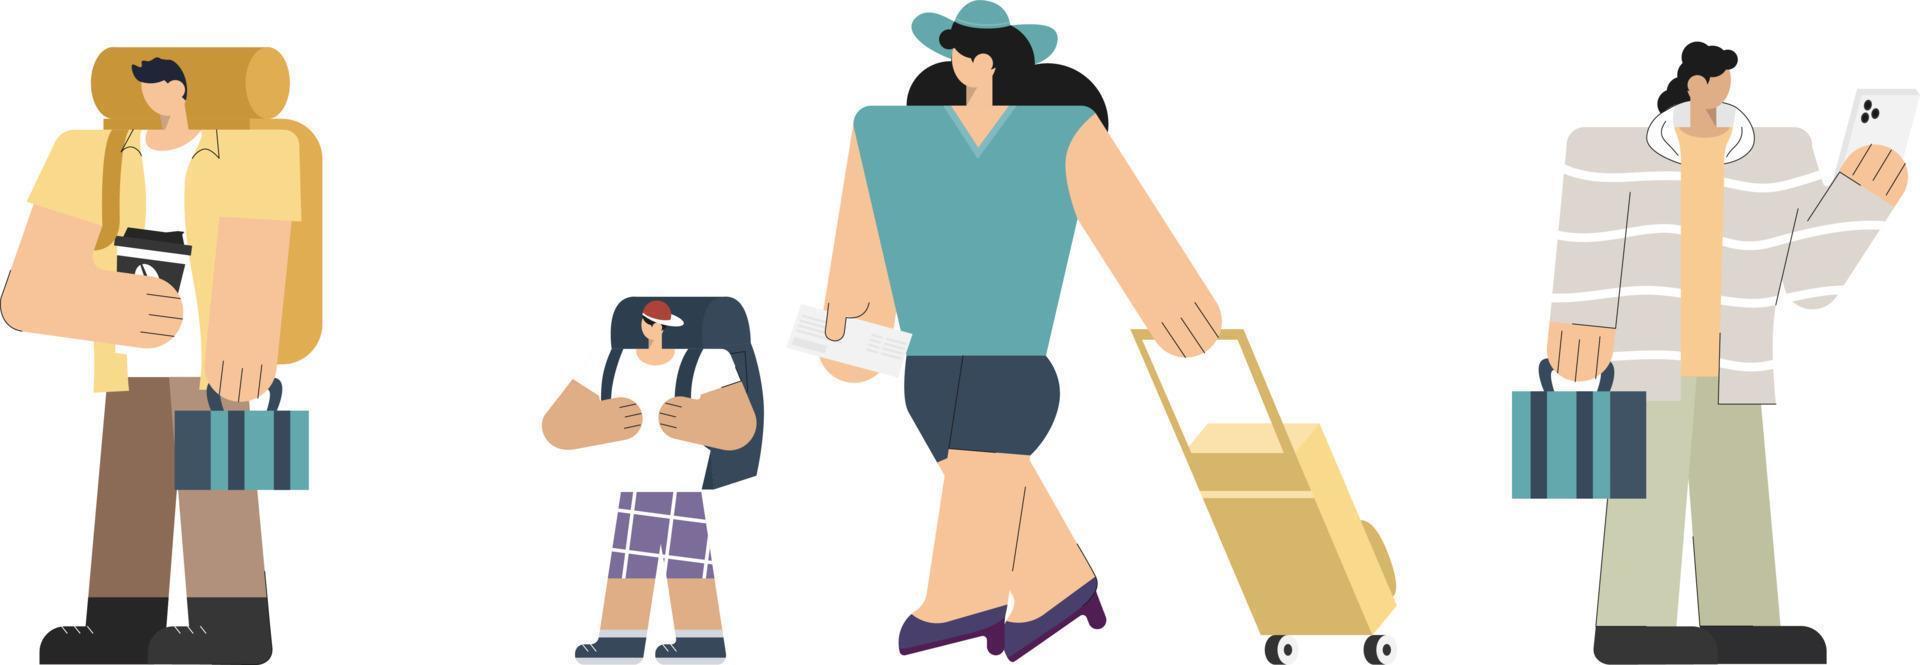 passageiro de personagem de desenho animado com bagagem e telefone celular andando no saguão de embarque do terminal do aeroporto esperando o voo de férias de férias de embarque vetor